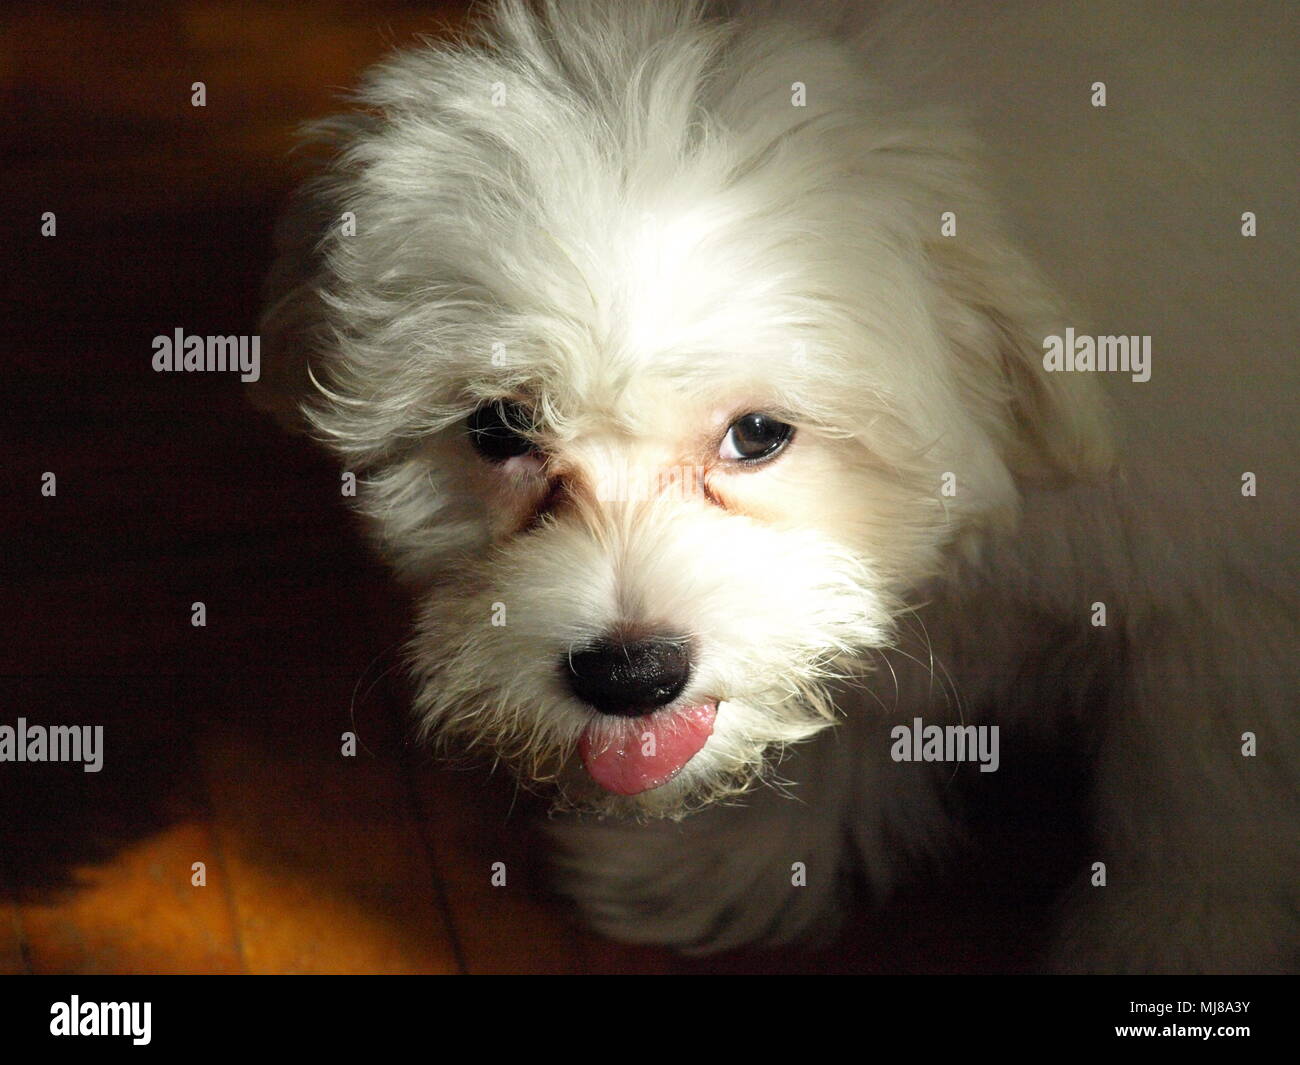 Hund, Vogel, Lächeln, Sinn des Lebens, wahre Liebe, Frieden, ntistress,  Flügel, Shell Stockfotografie - Alamy